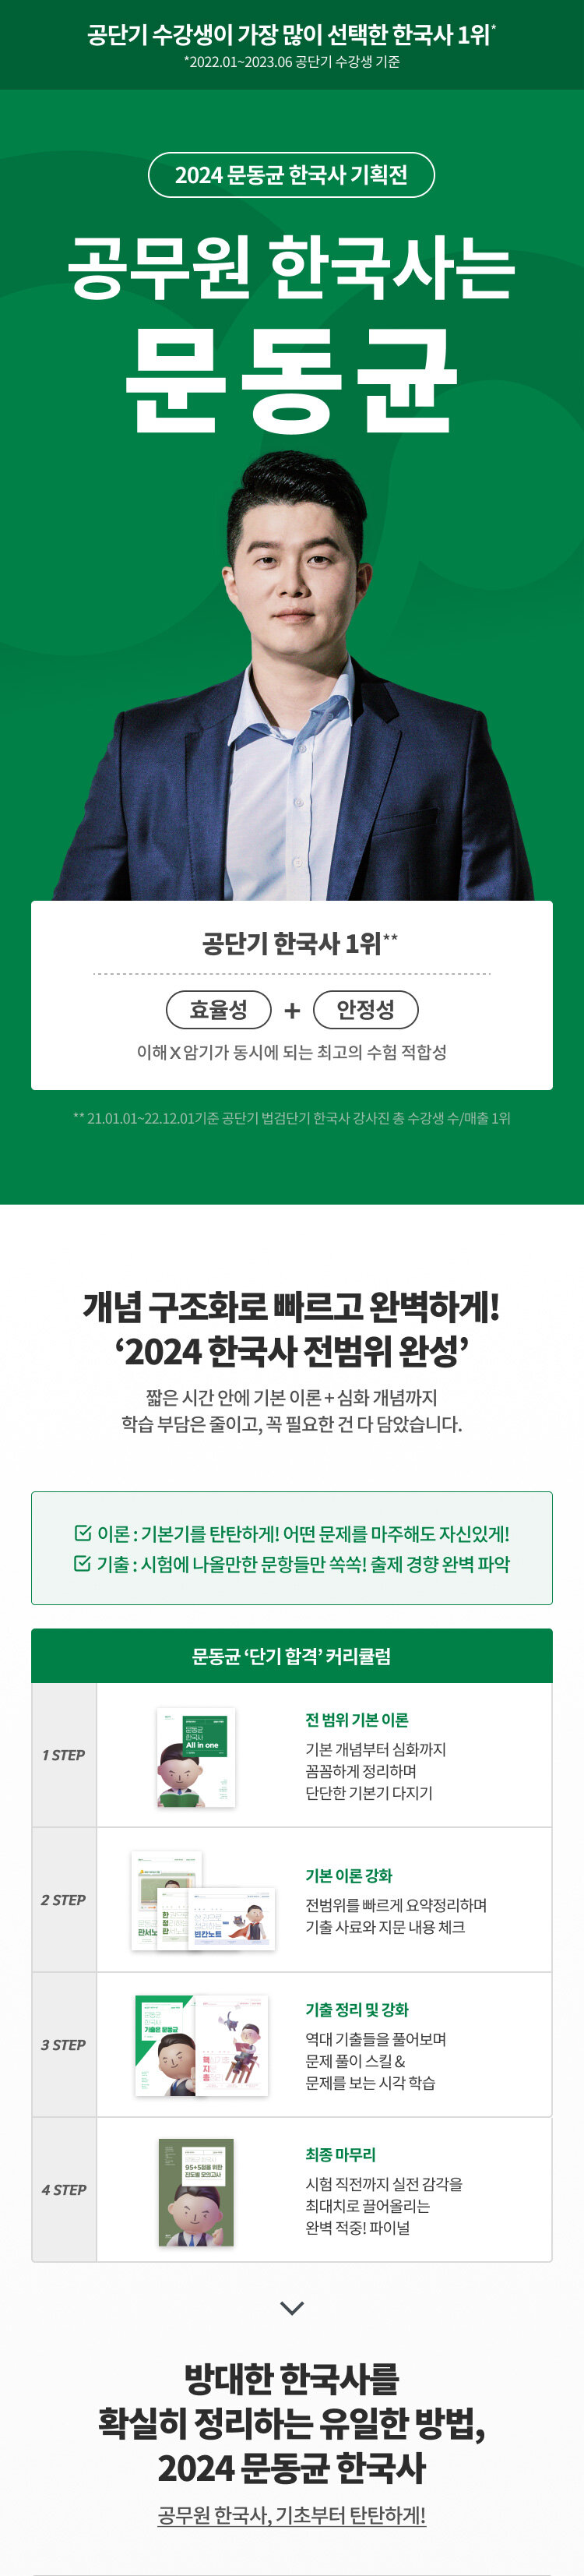 2024 문동균 한국사 기획전 이벤트